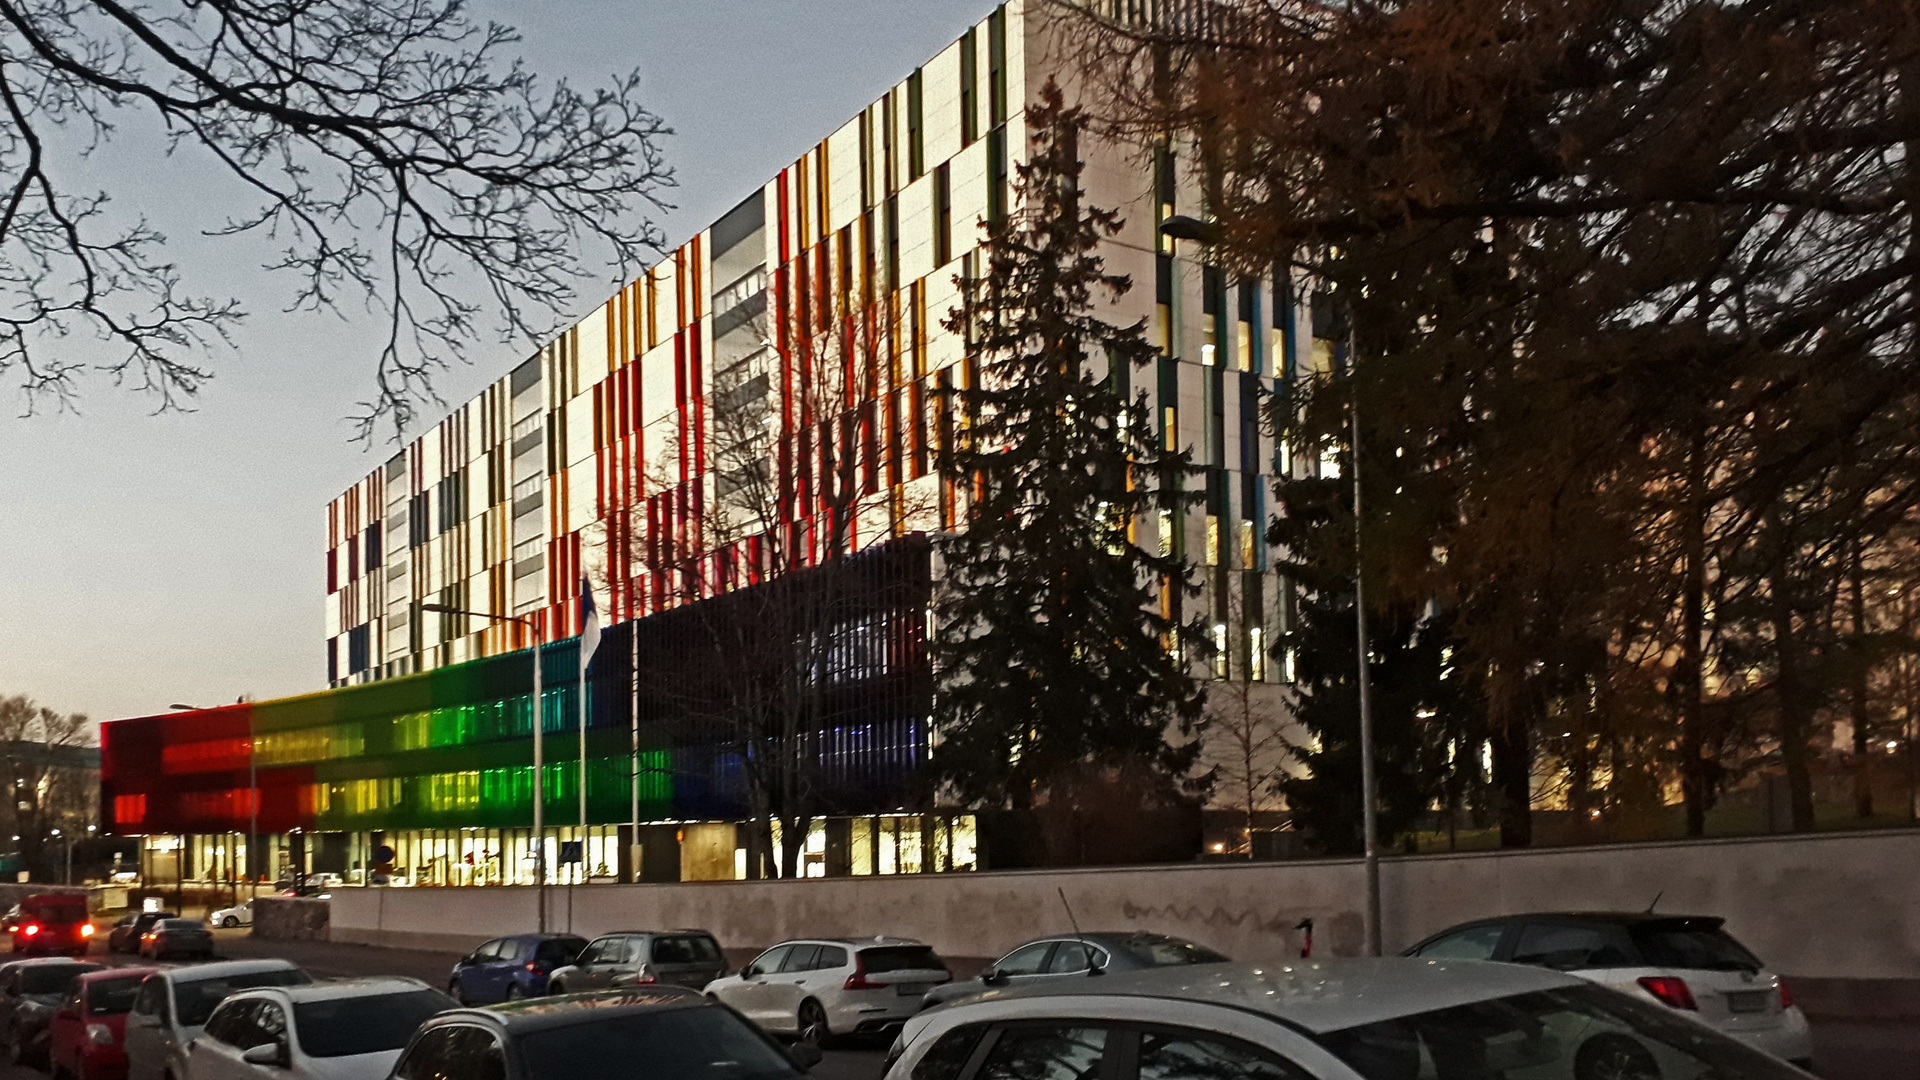 Helsinki, The hospital for children